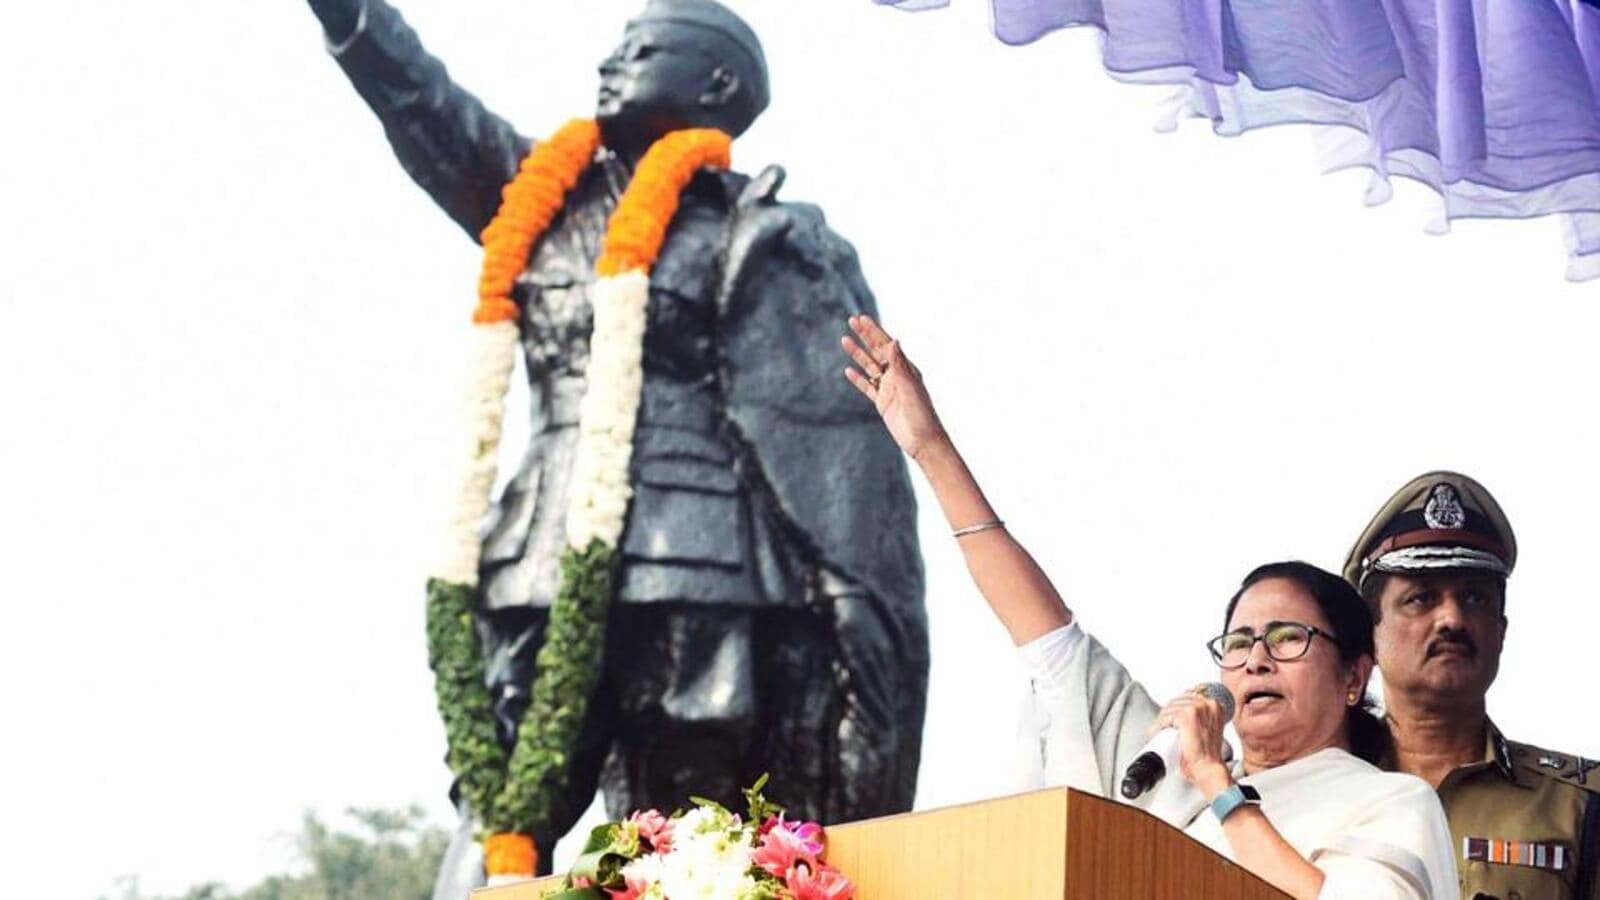 On renaming islands in Andaman, Mamaa Banerjee takes a dig at PM Modi